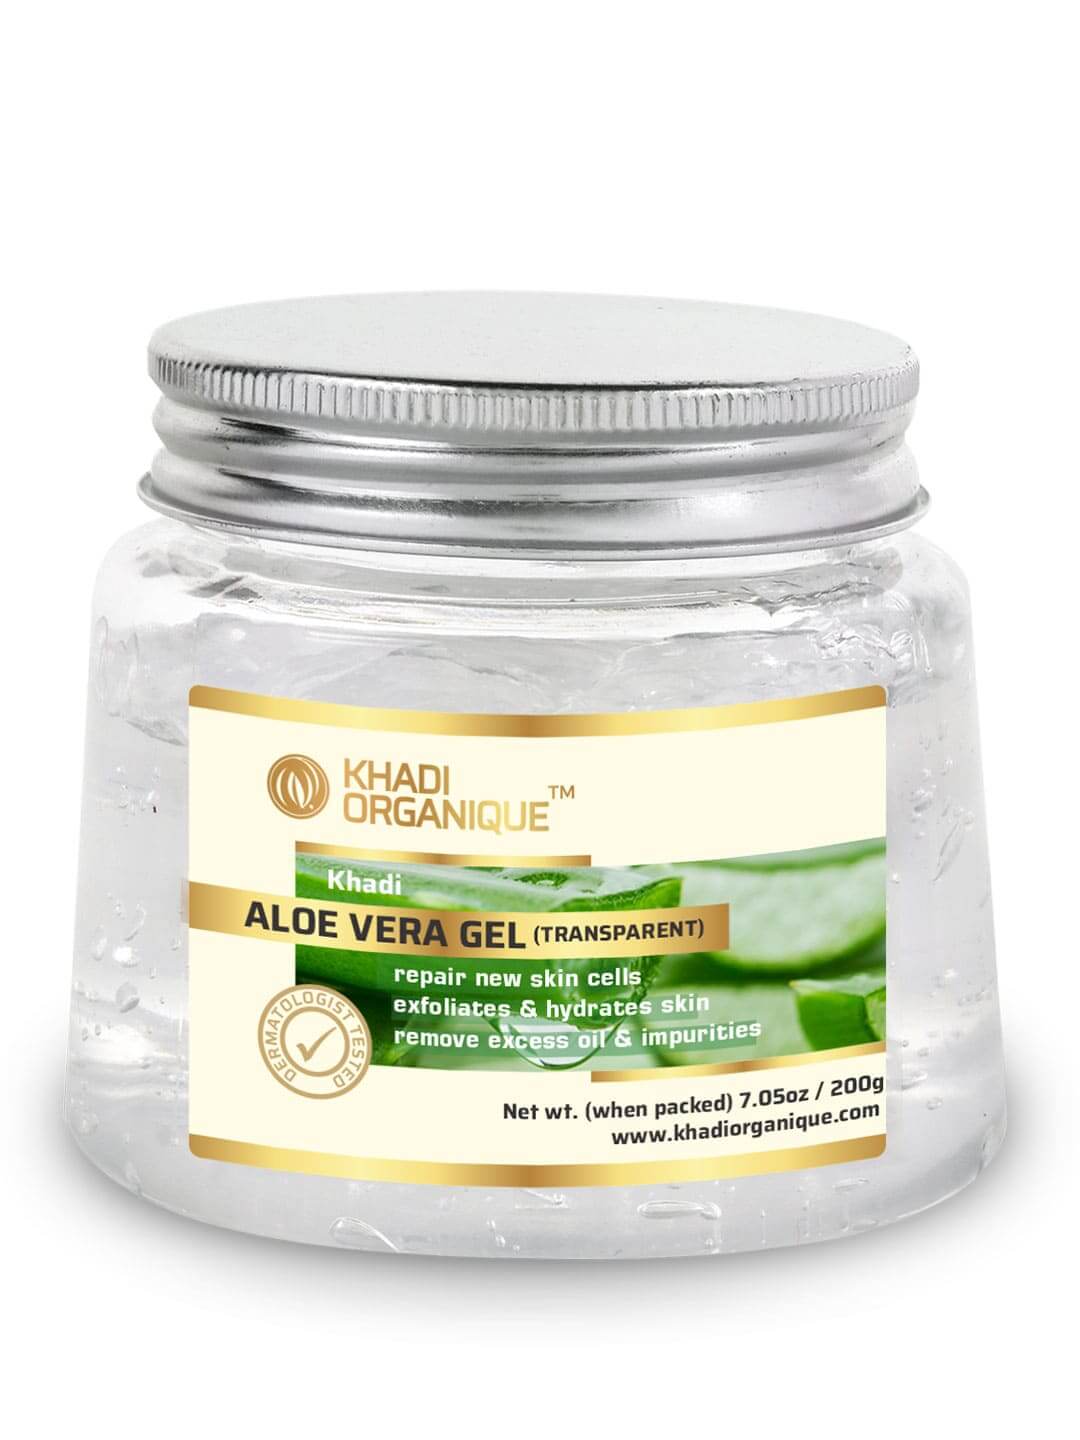 Khadi Organique Aloe vera gel (transparent )